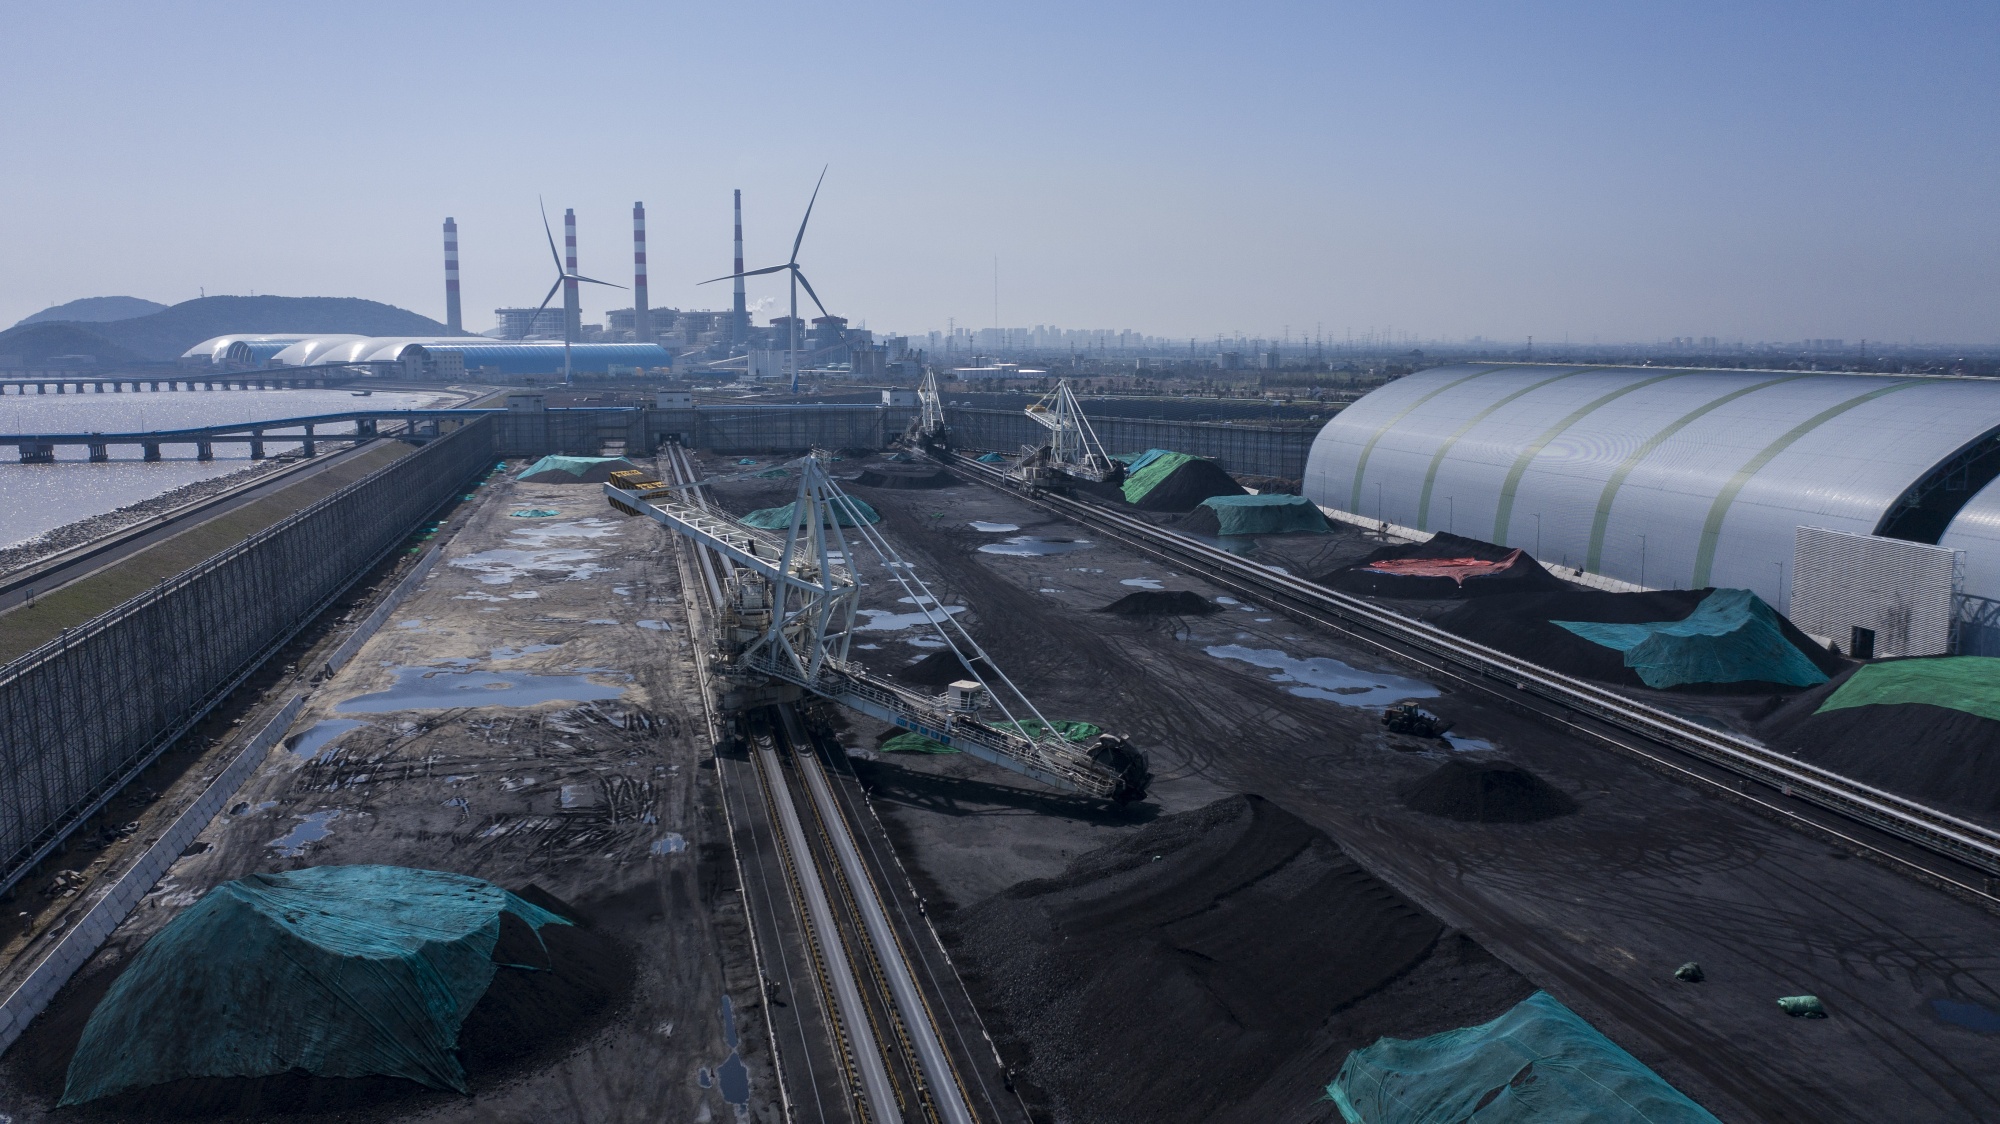 A coal depot near a power station in Jiaxing, Zhejiang province, China.